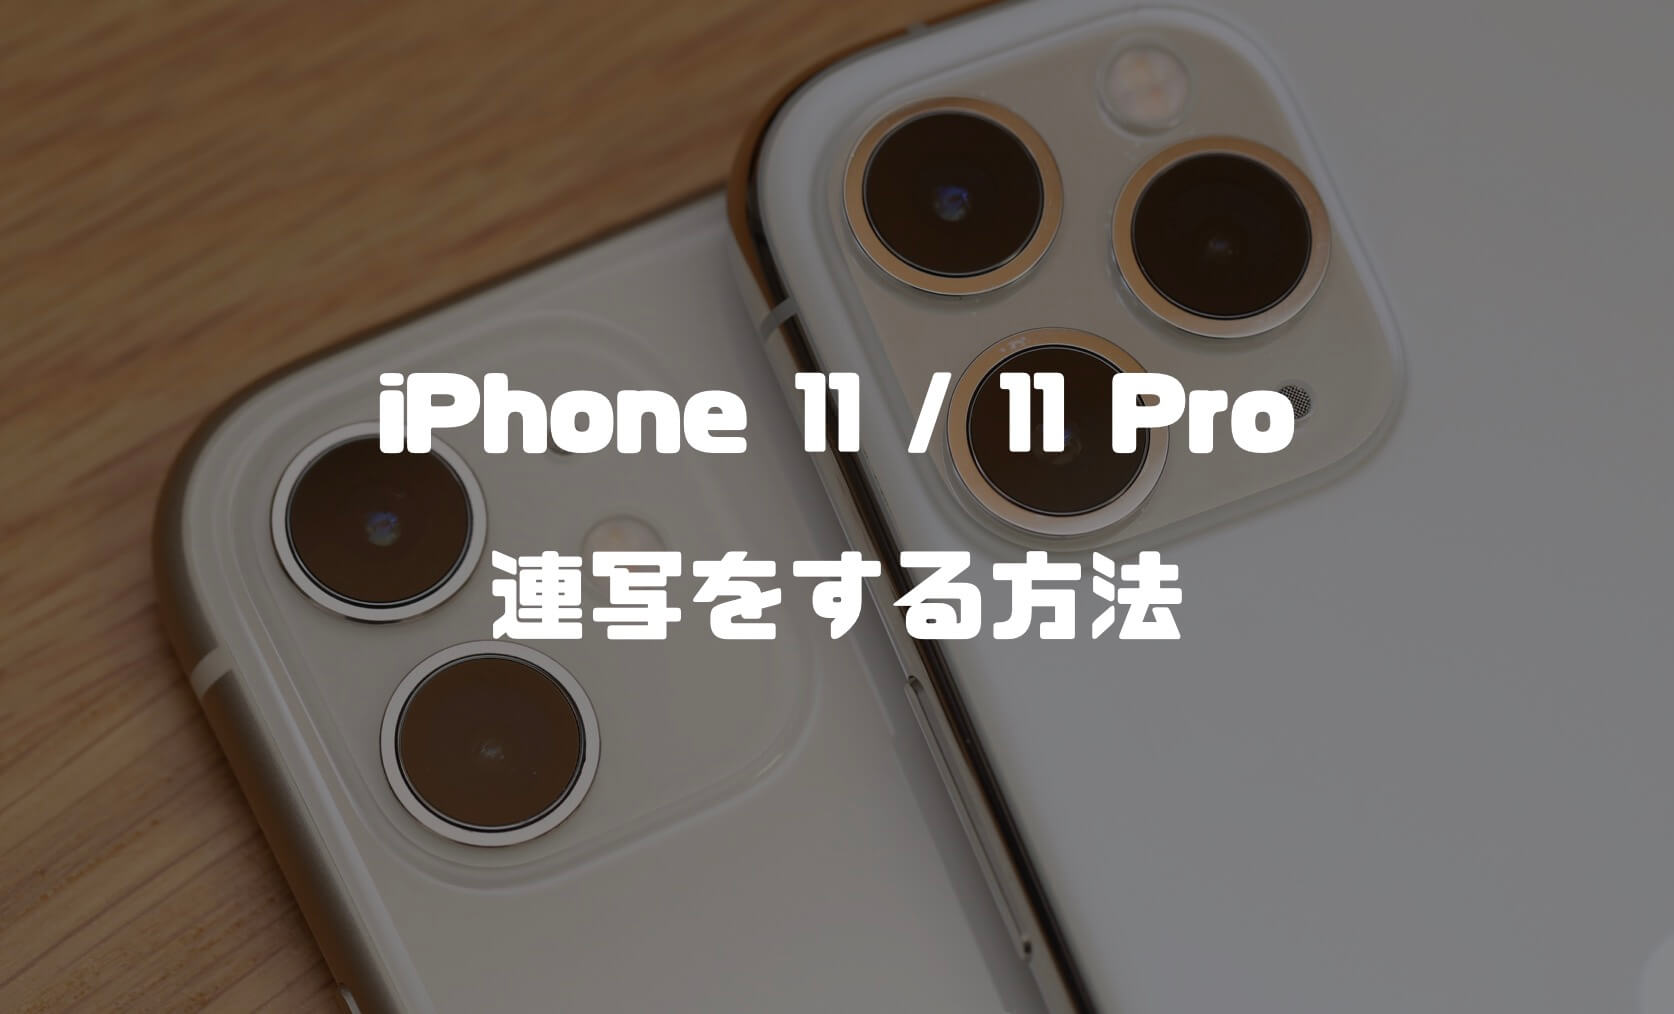 Iphone 11 11 Pro Seで連写する方法紹介 これまでのiphoneとは